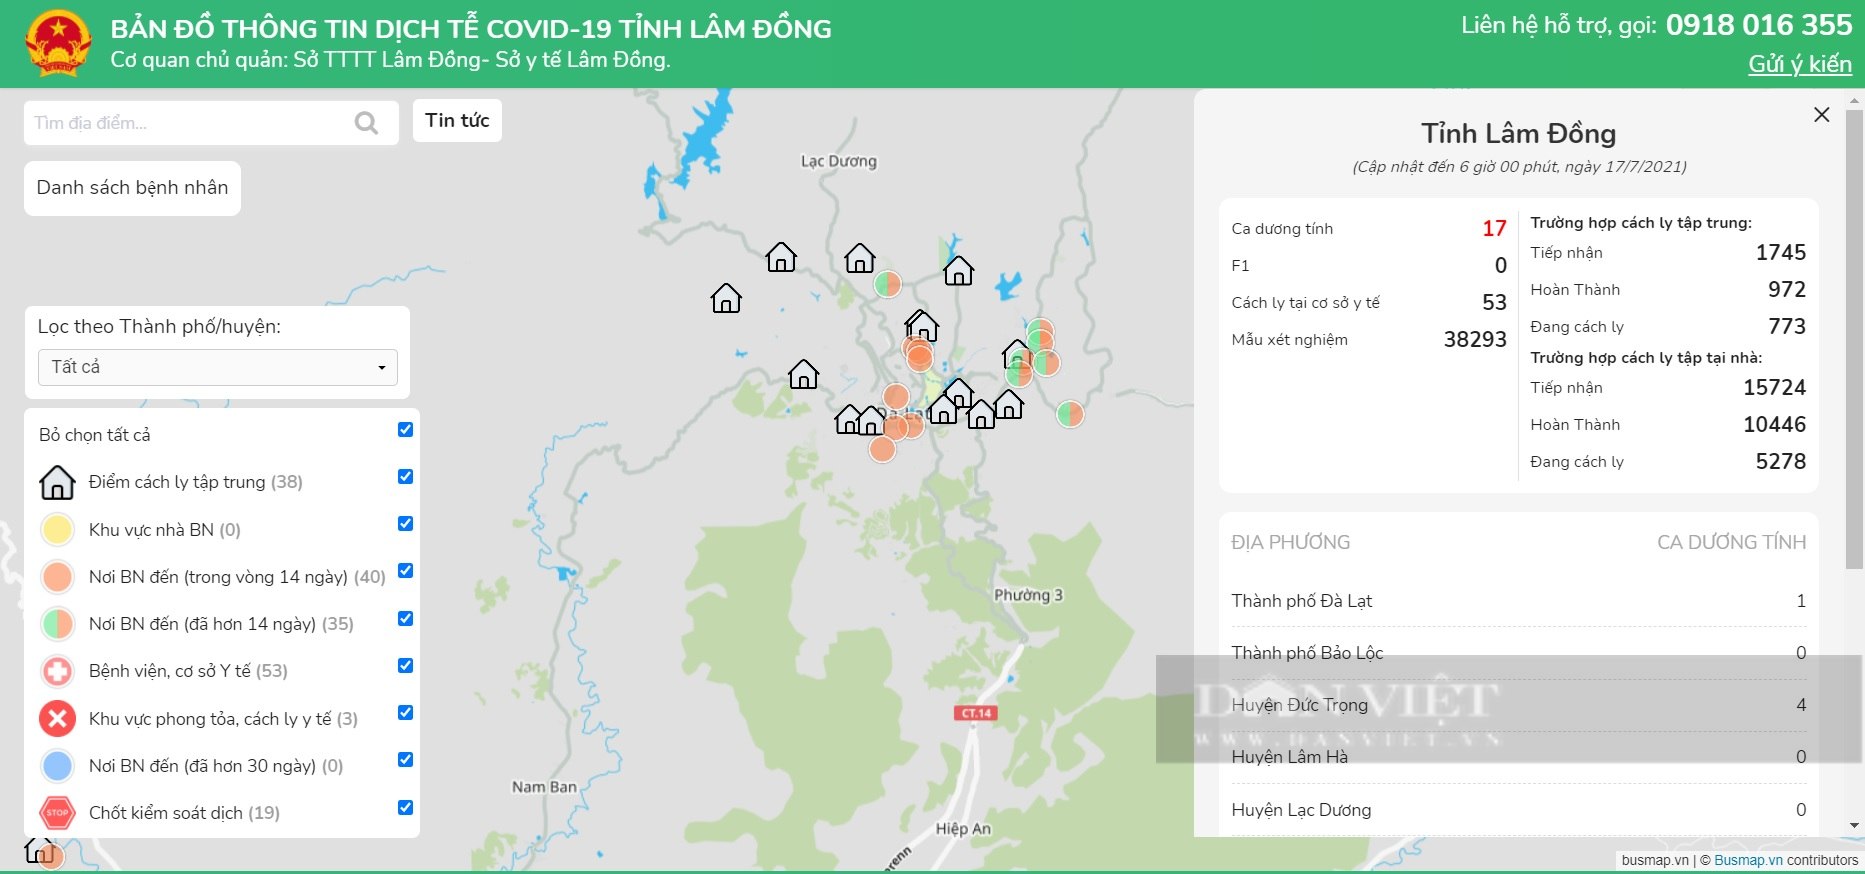 Lâm Đồng: Vận hành bản đồ số dịch tễ Covid-19, hiển thị đầy đủ thông tin dịch tại địa phương - Ảnh 1.